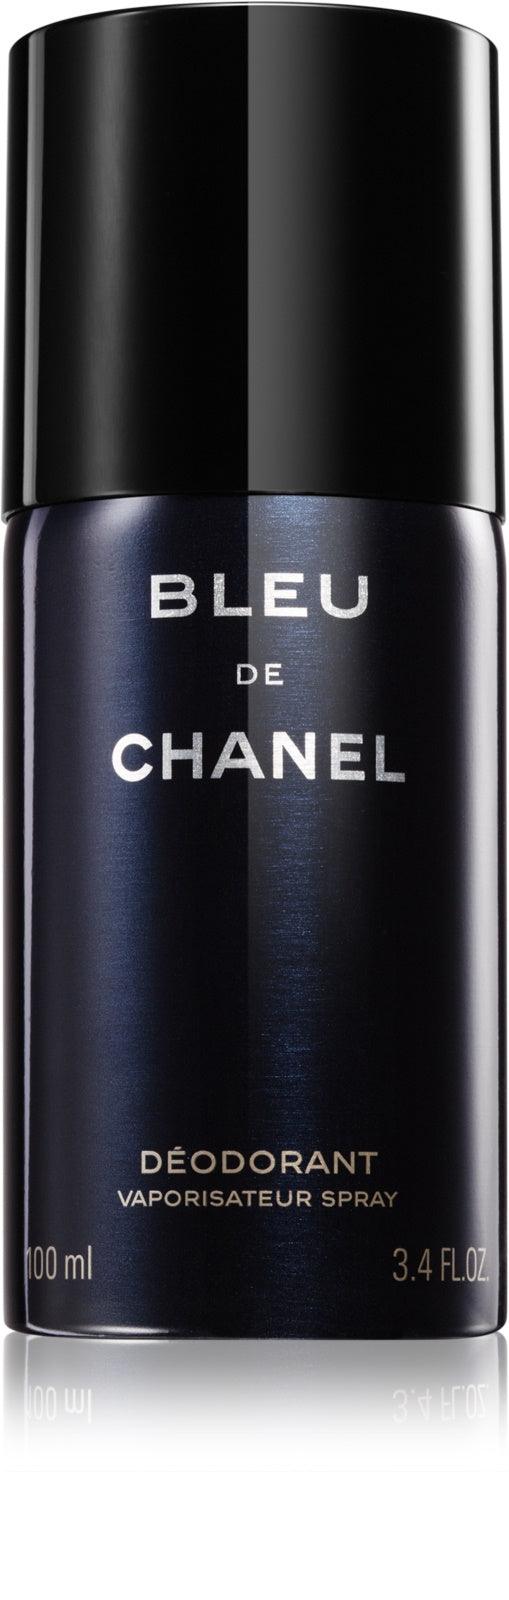 Trebit Bleu Noire Eau De Parfum By Fragrance World 100ml 3.4 fl oz – Triple  Traders